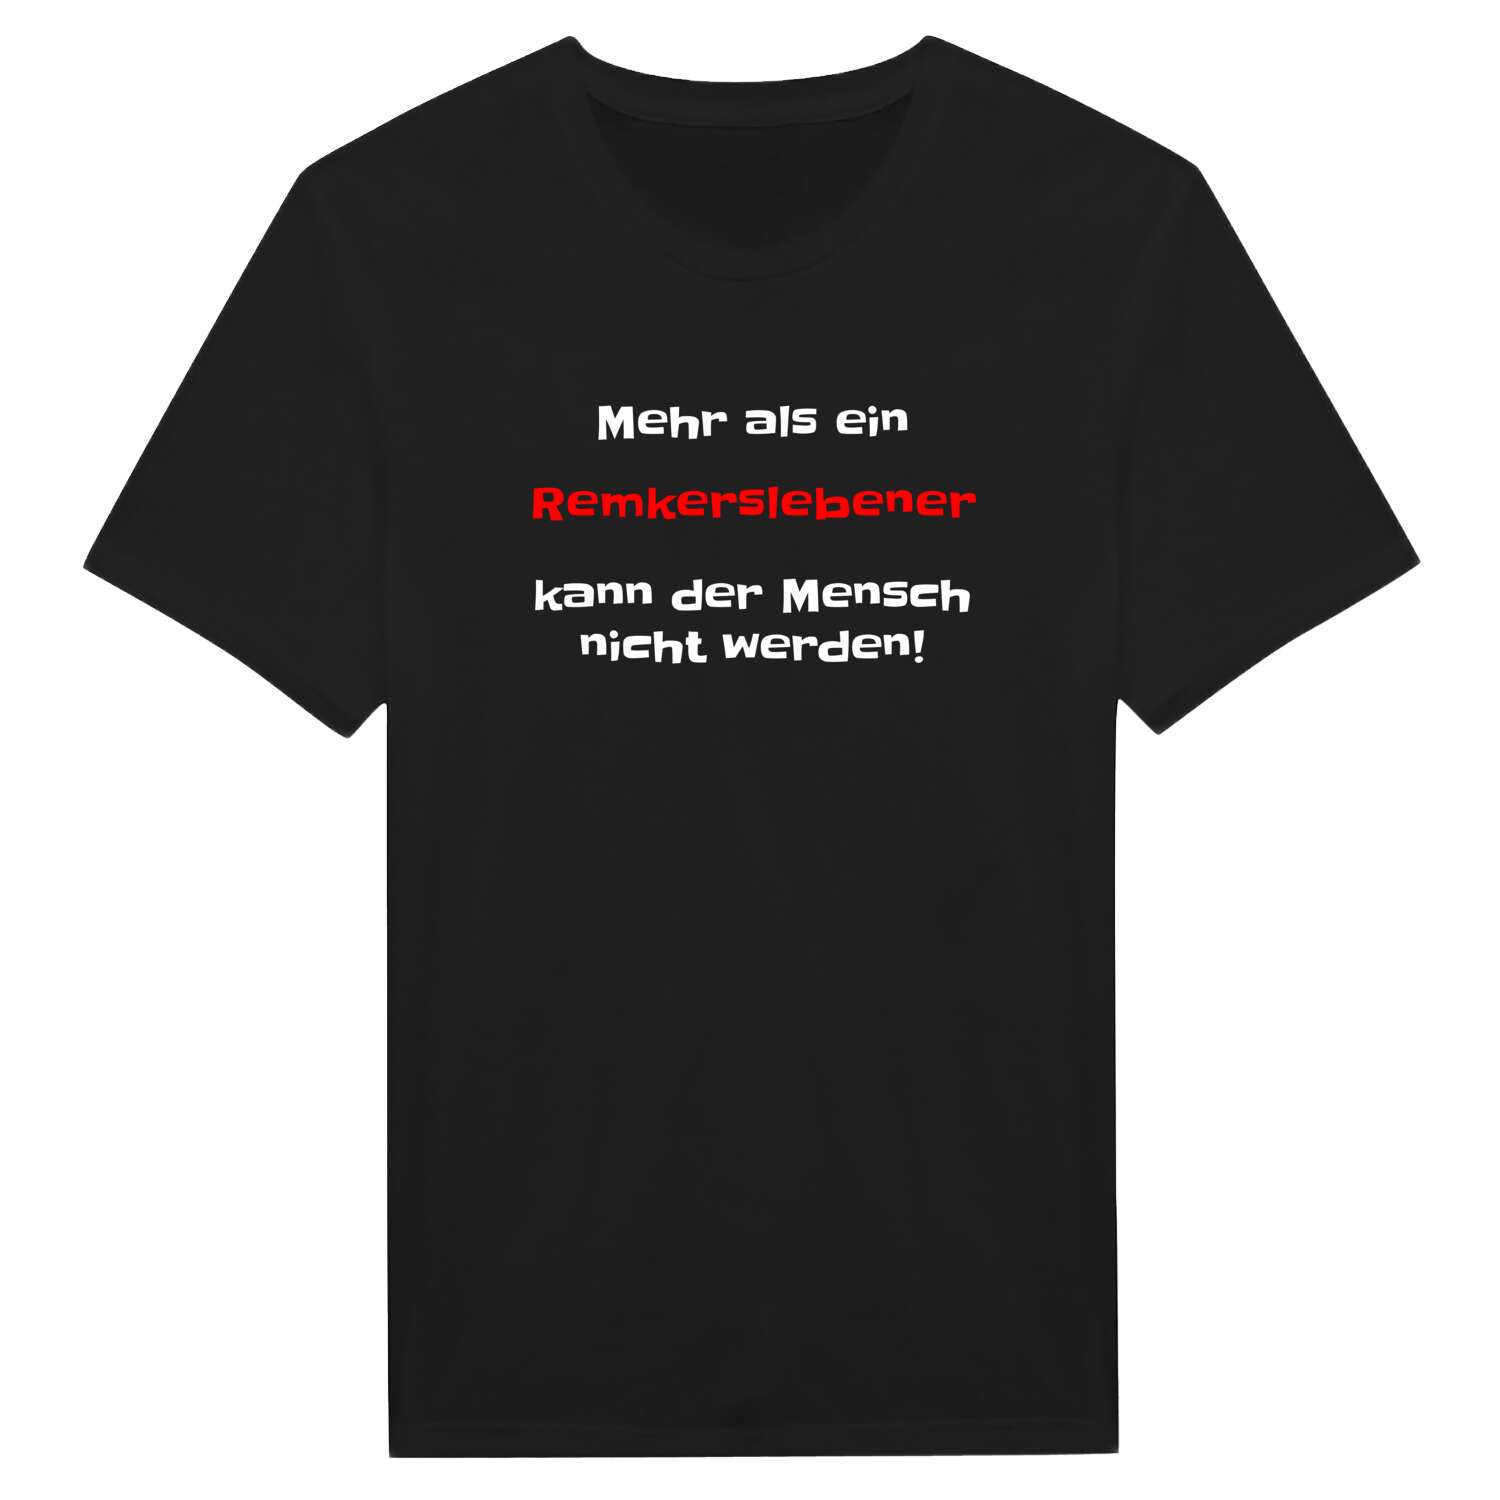 Remkersleben T-Shirt »Mehr als ein«